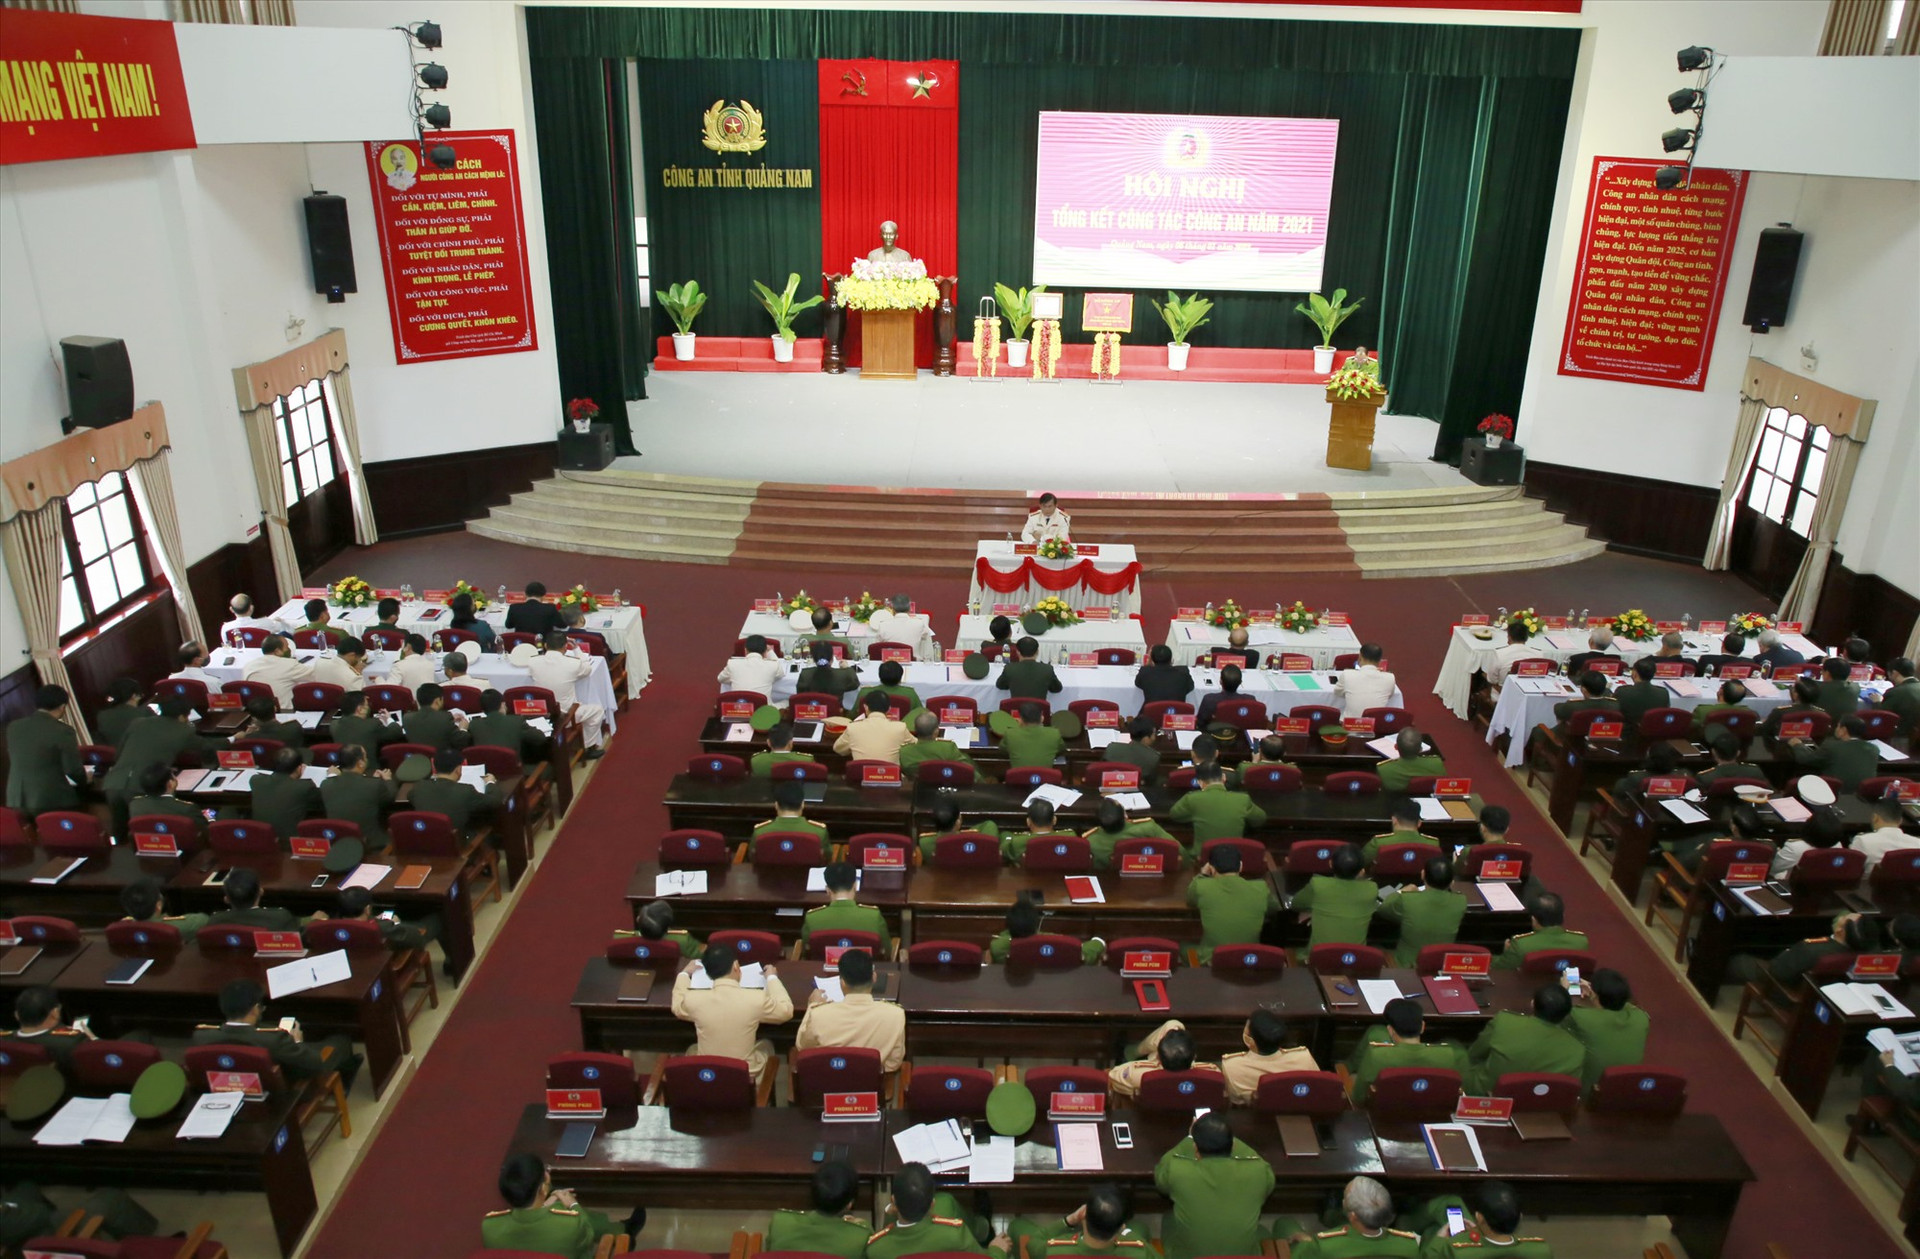 Hội nghị được khai mạc tại trụ sở Công an tỉnh vào sáng nay, ngày 6.1. Ảnh: T.C